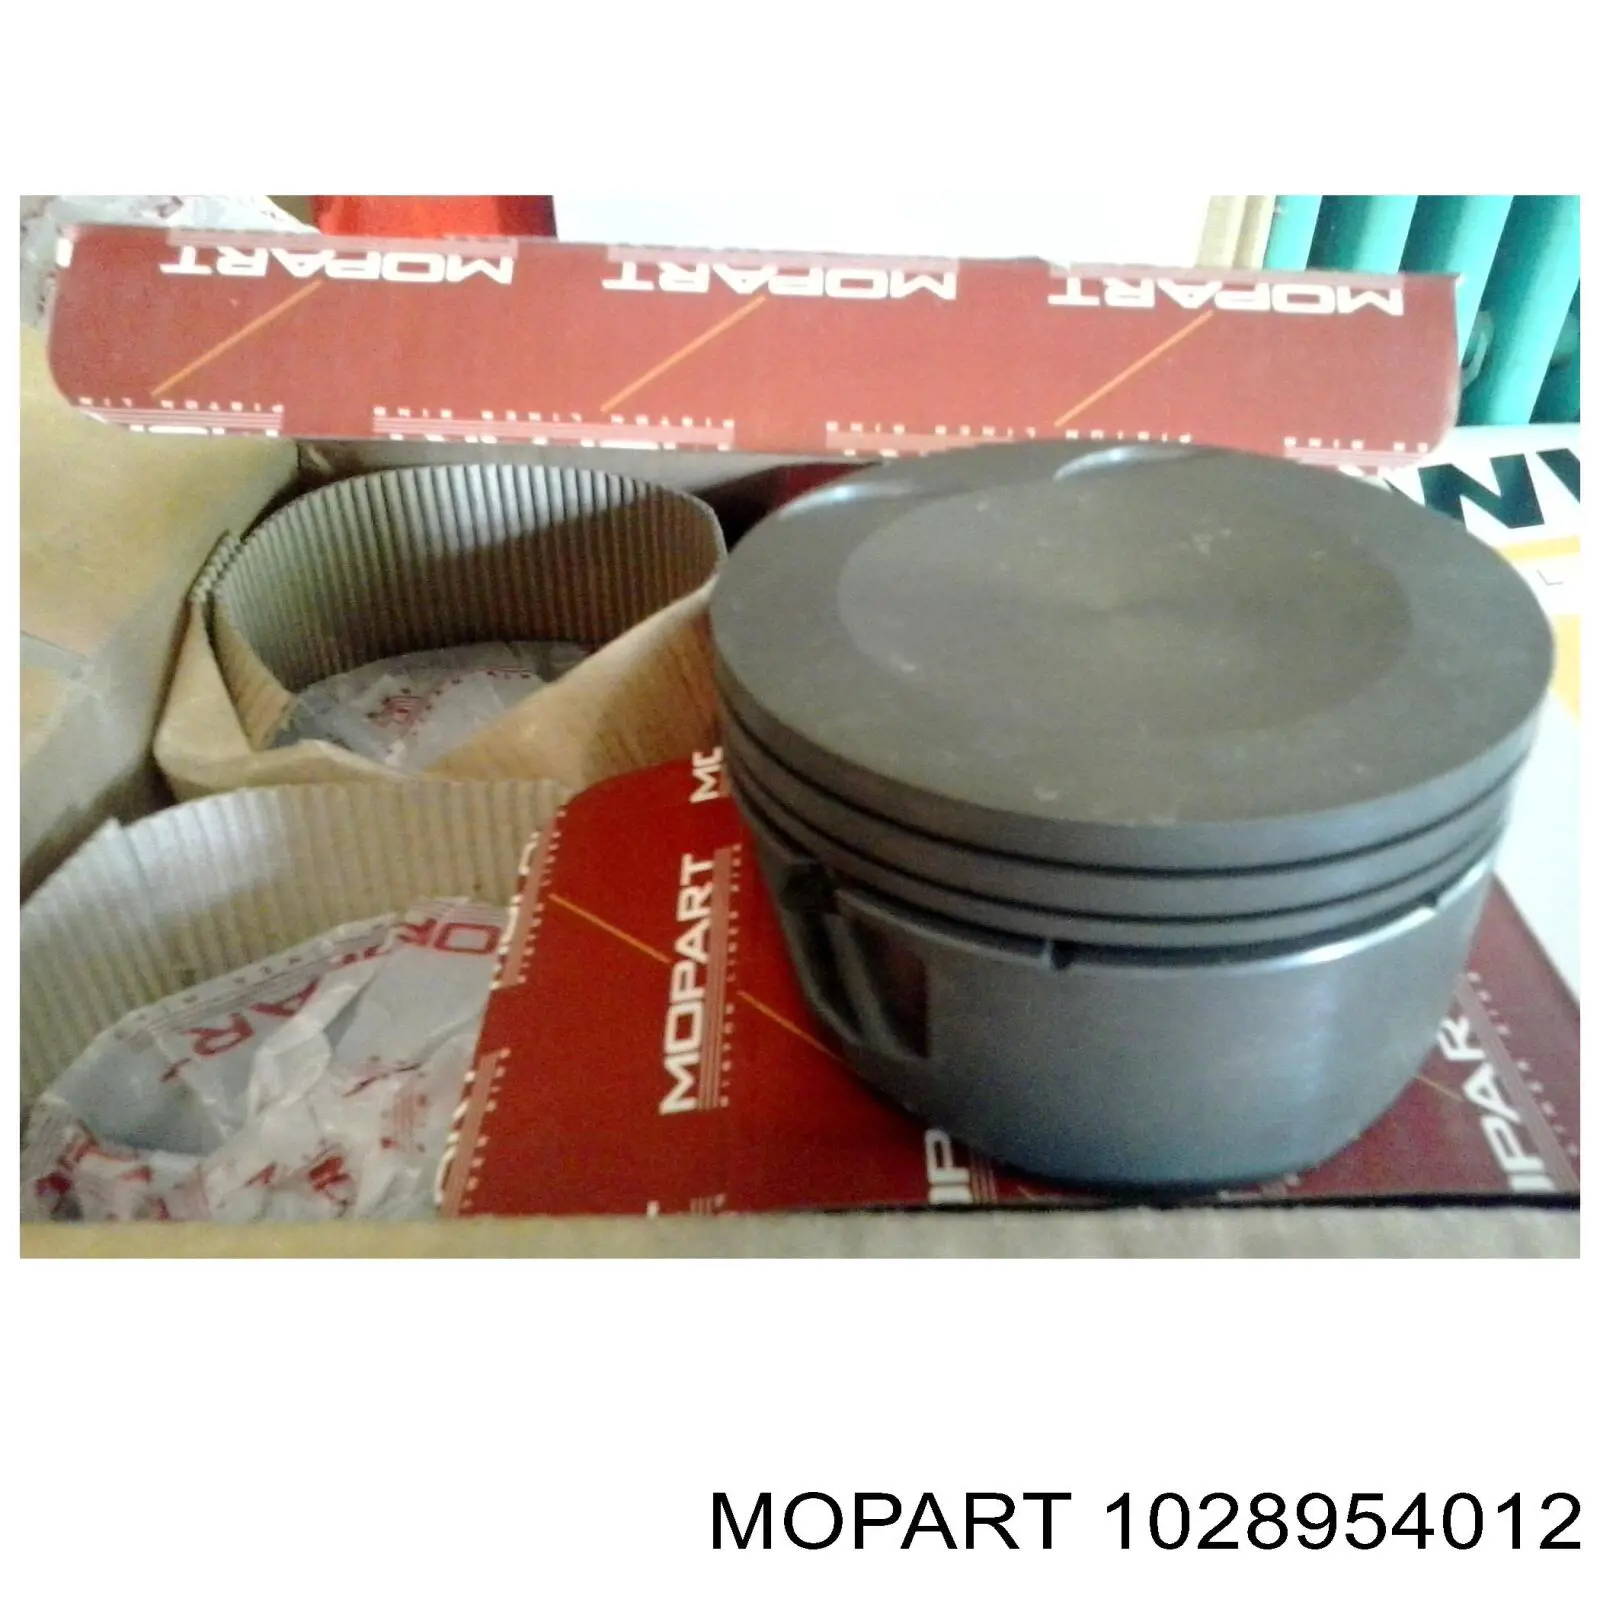 8954012 Mopart поршень в комплекте на 1 цилиндр, 4-й ремонт (+1,00)